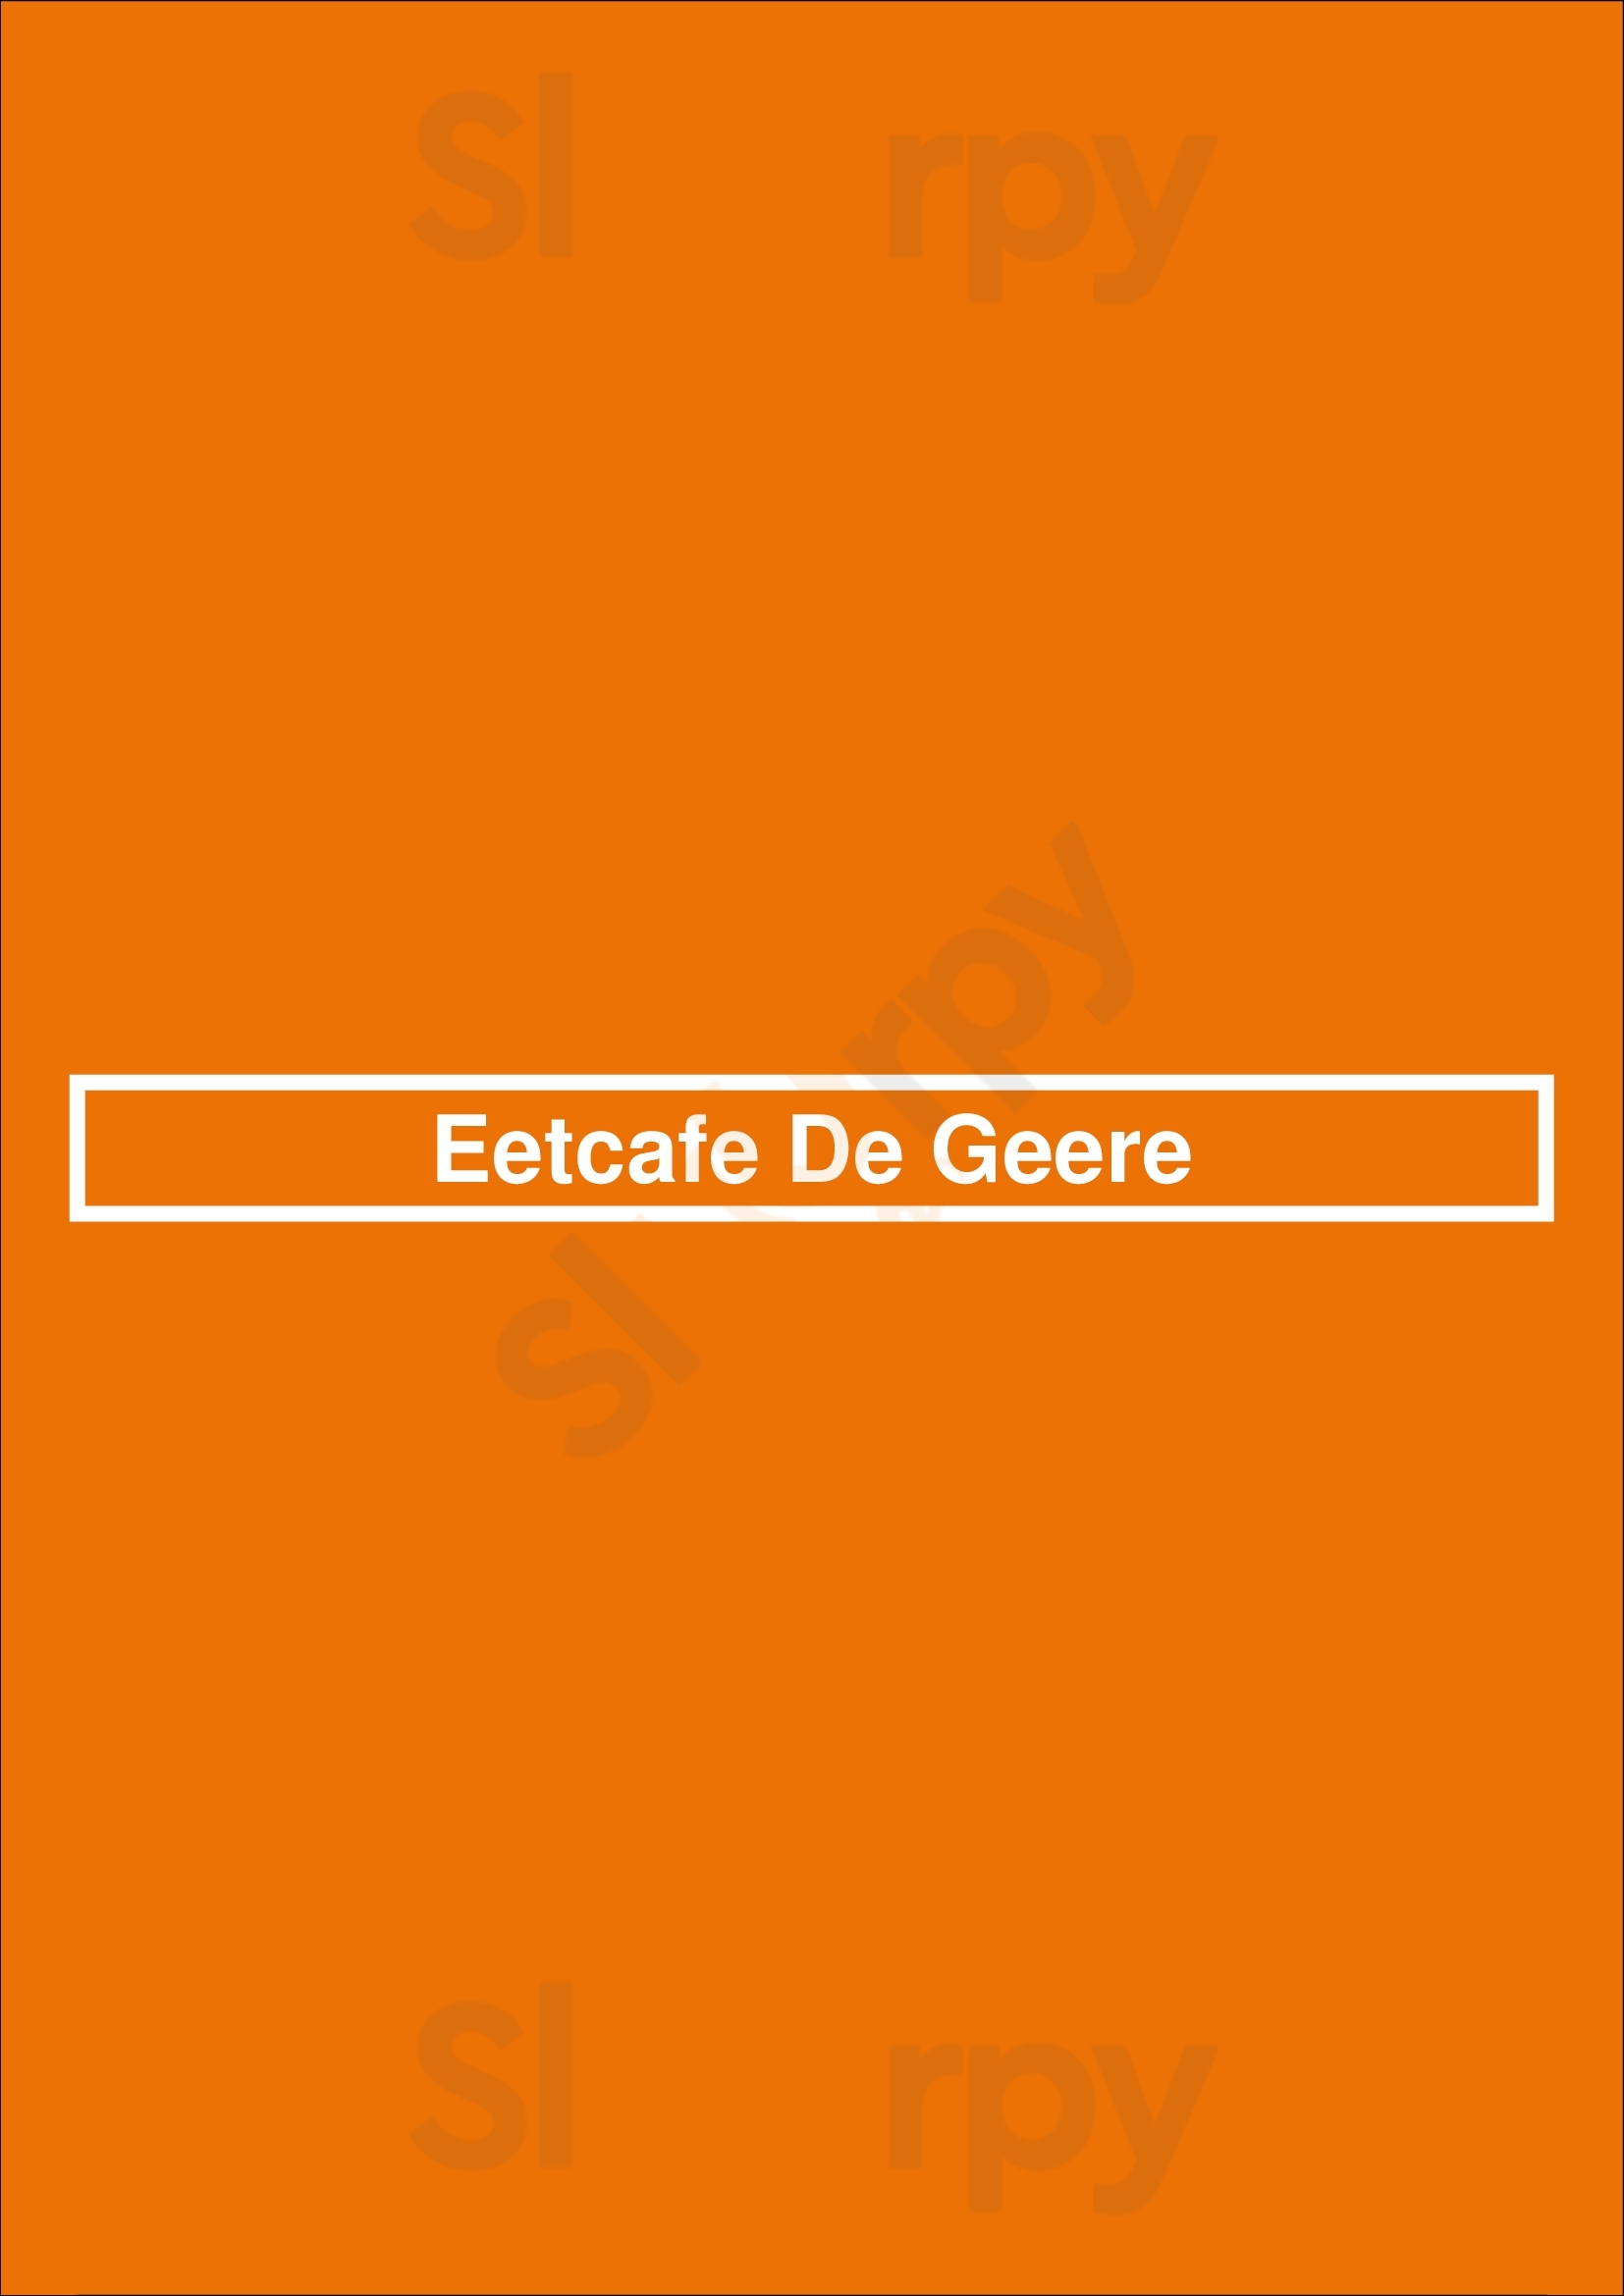 Eetcafe De Geere Middelburg Menu - 1